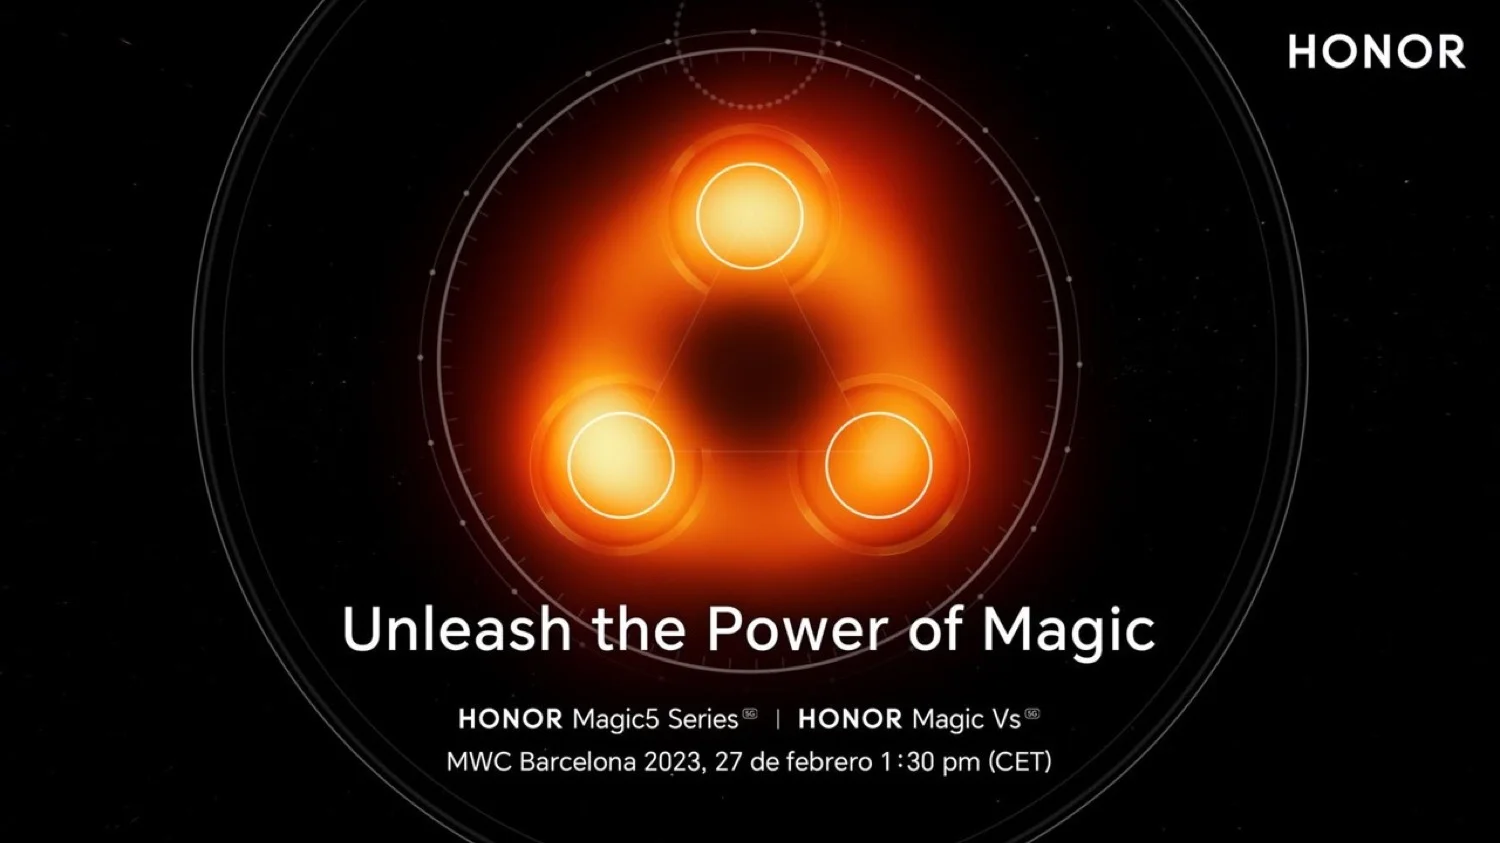 Fecha y hora para la presentación de la HONOR Magic5 Series